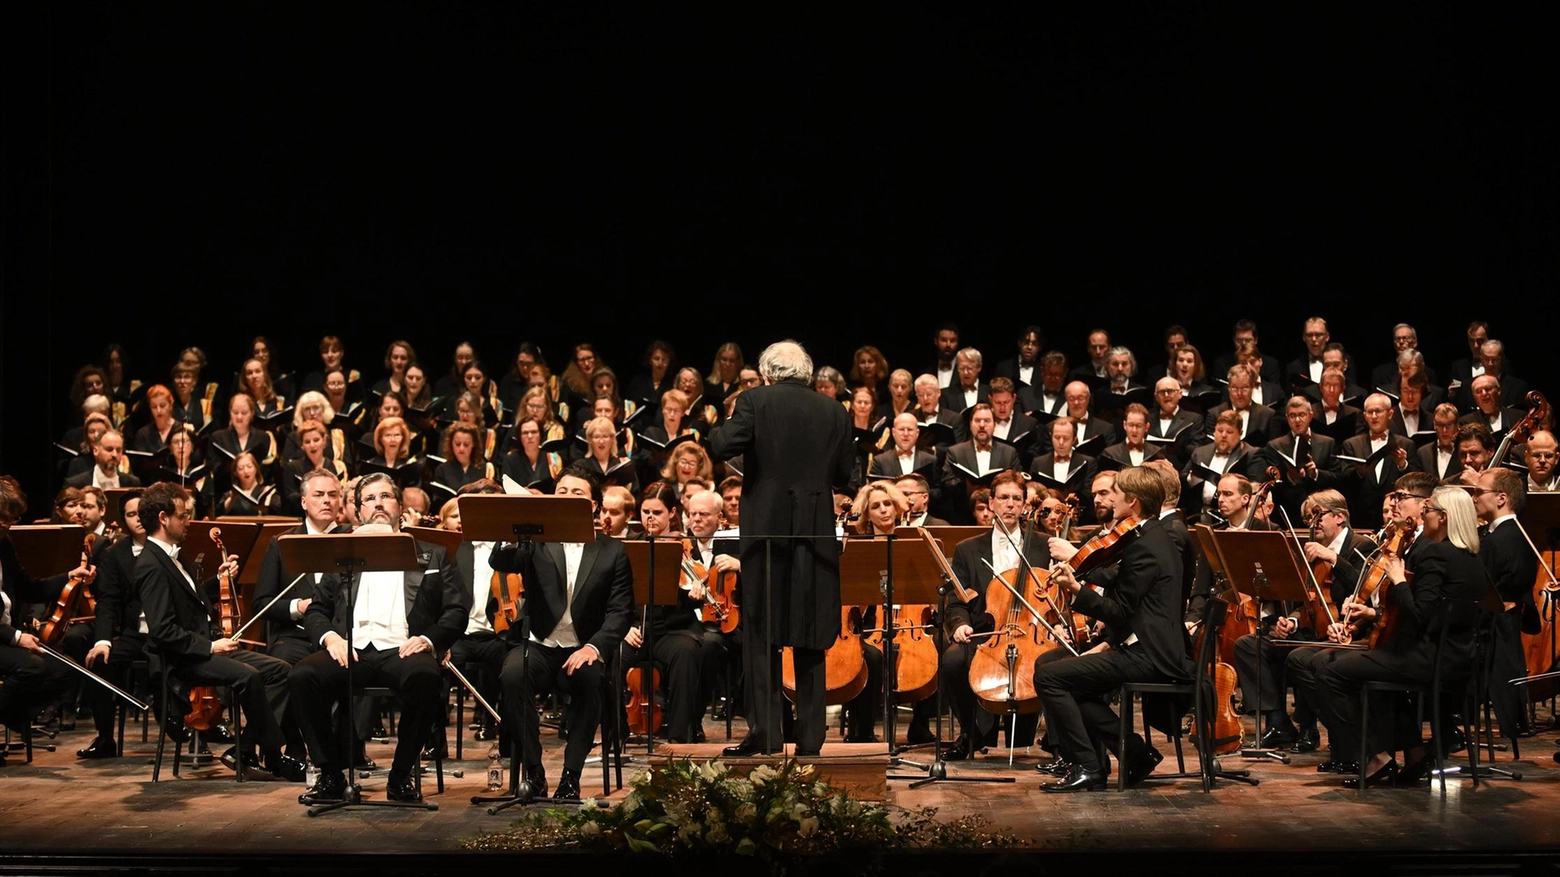 Pubblico entusiasta per lo speciale concerto della Filarmonica di Vienna diretta da Adam Fischer. Veronesi, Pardini e Lazzarini: “Omaggio straordinario per l’inizio del centenario della morte del Maestro”.